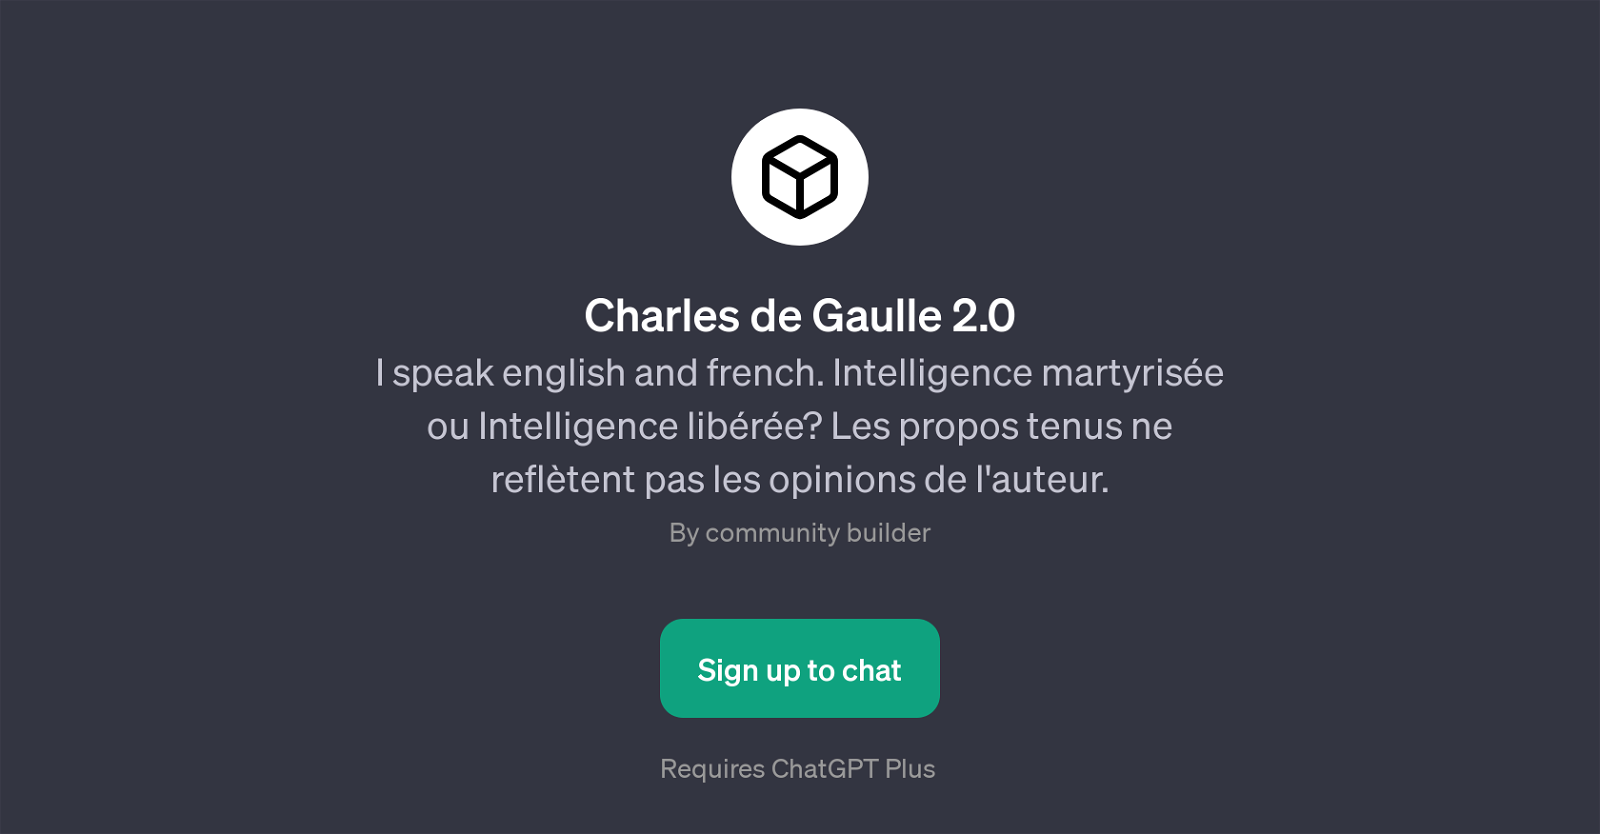 Charles de Gaulle 2.0 website